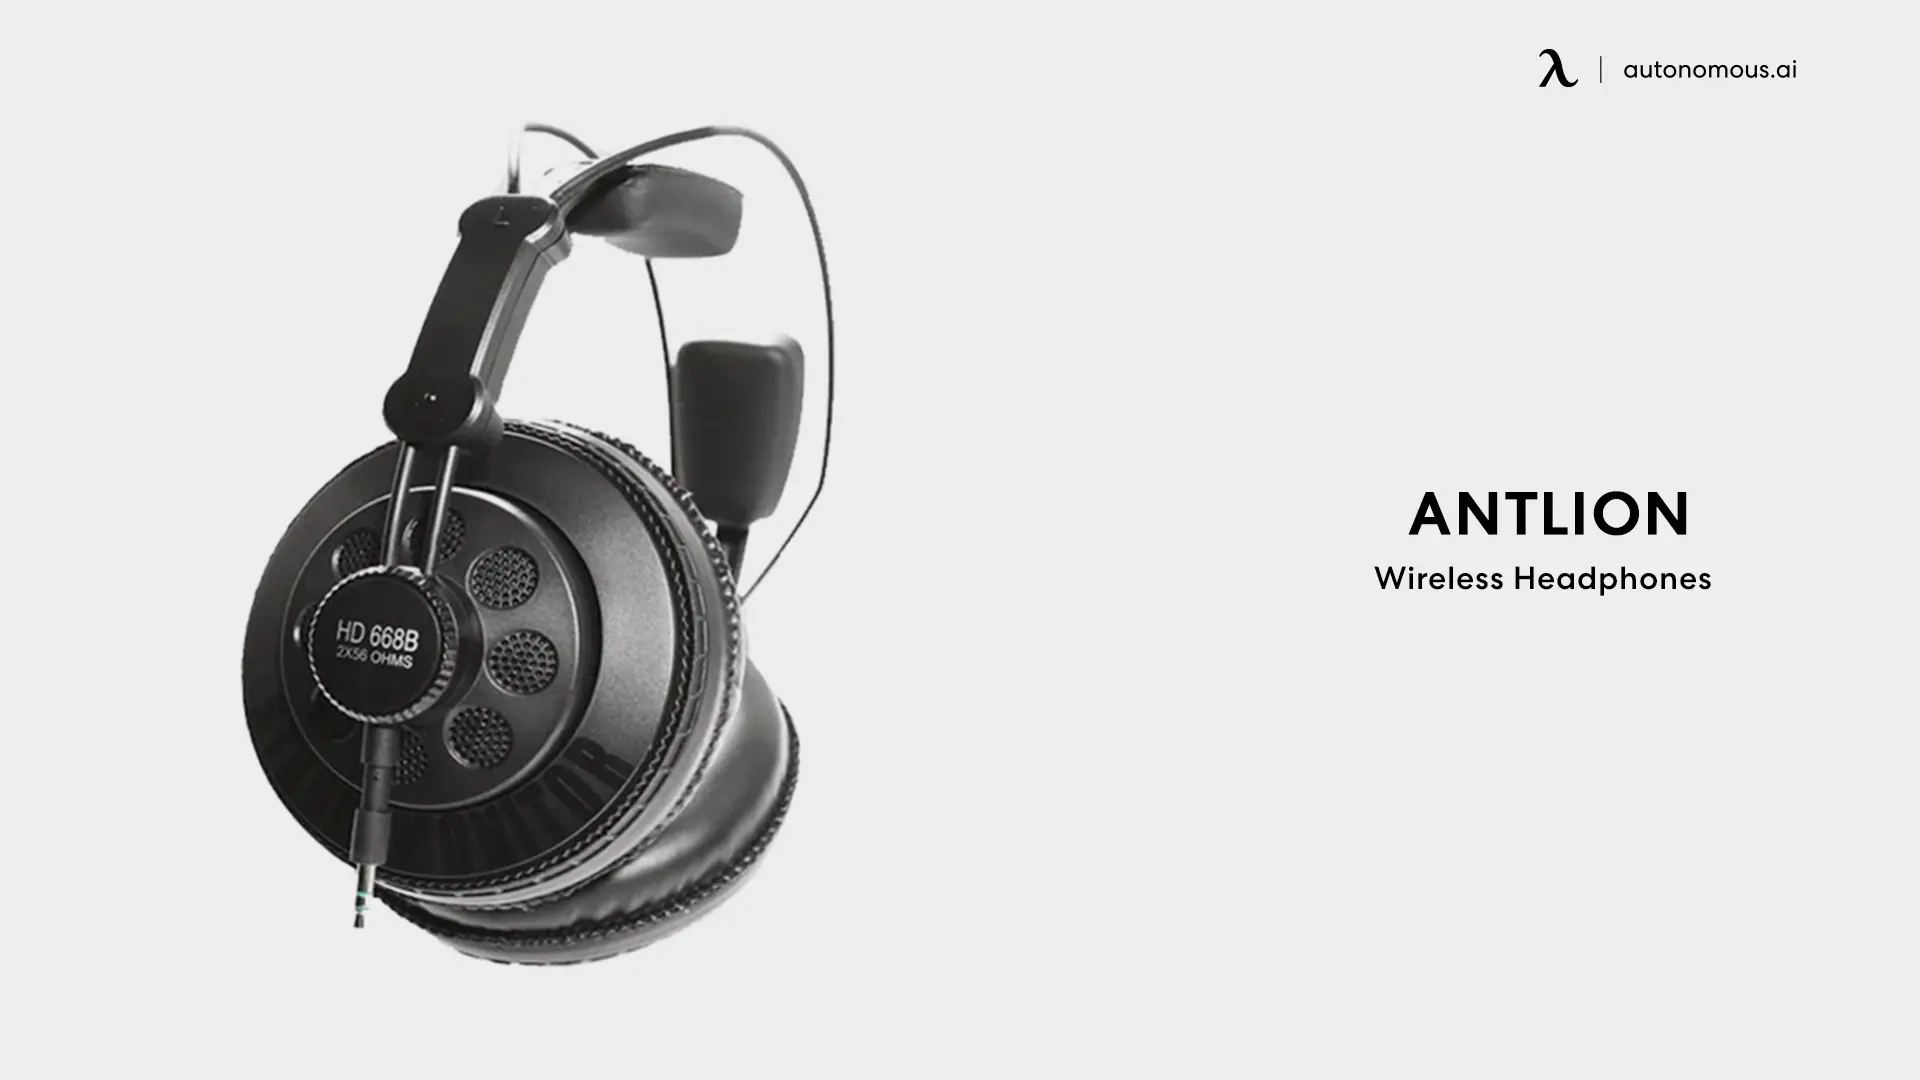 Antlion Wireless Headphones